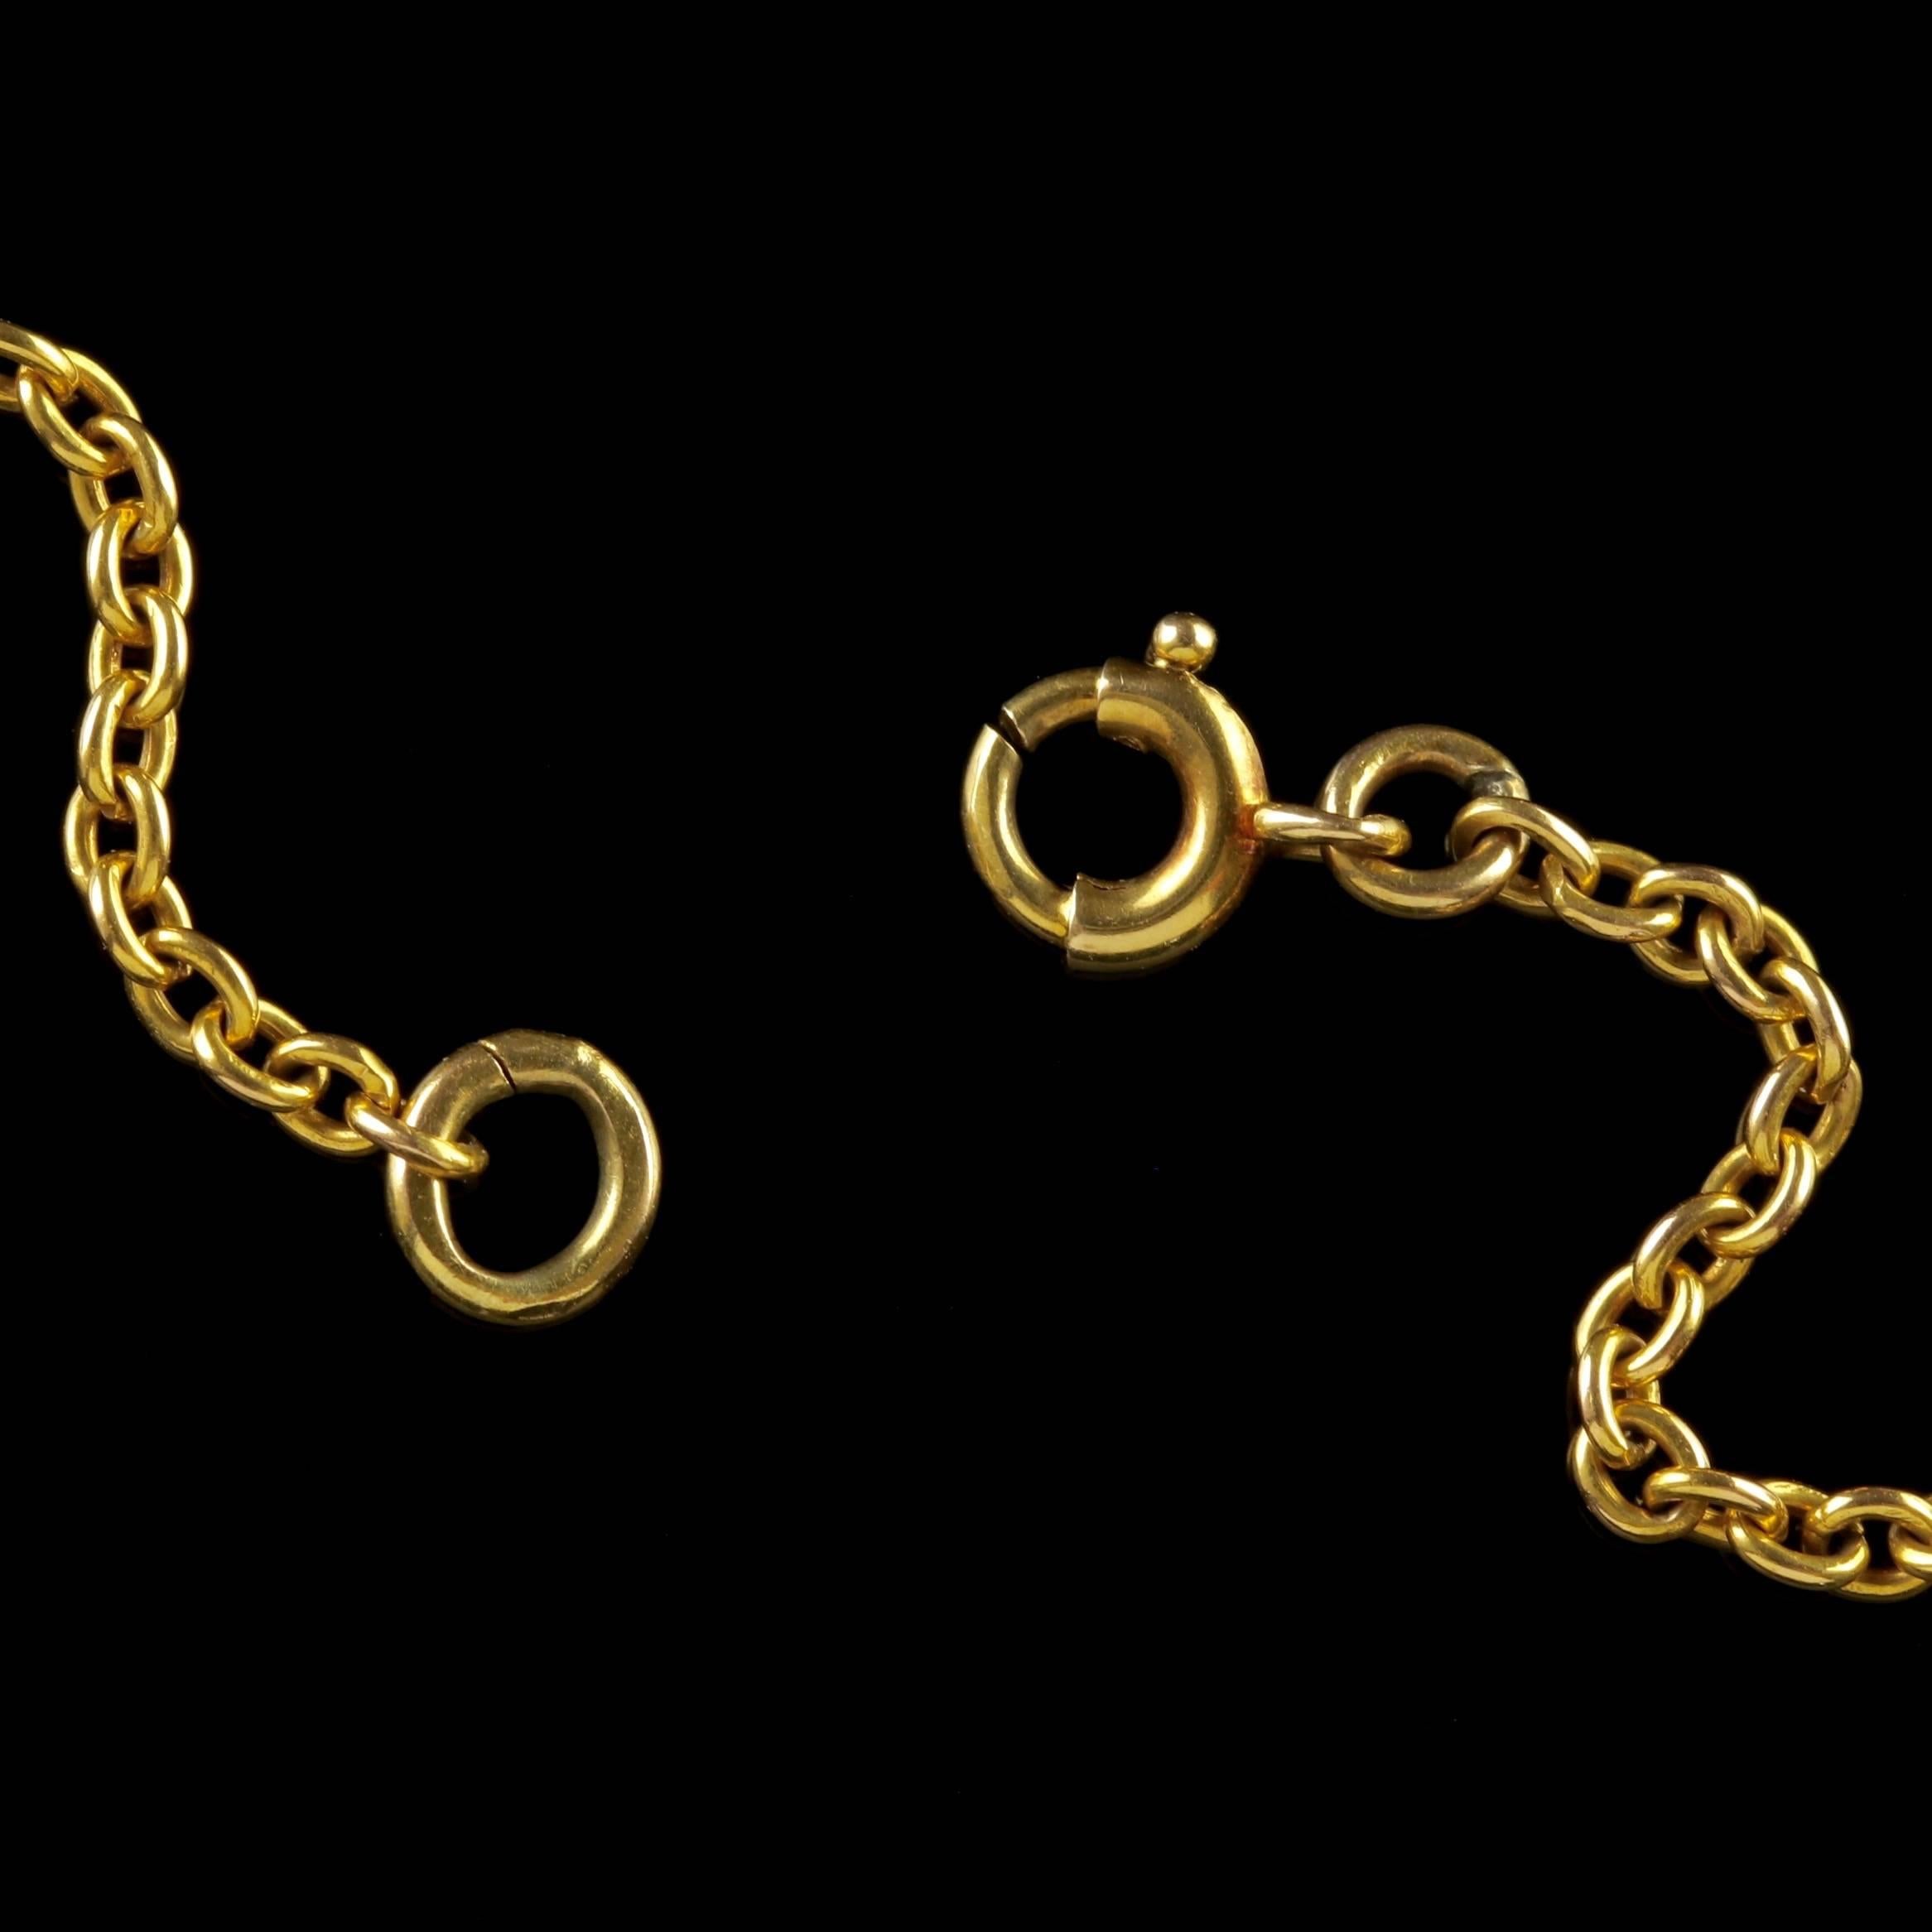 Antique Victorian 15 Carat Gold Suffragette Pearl Pendant Necklace 3